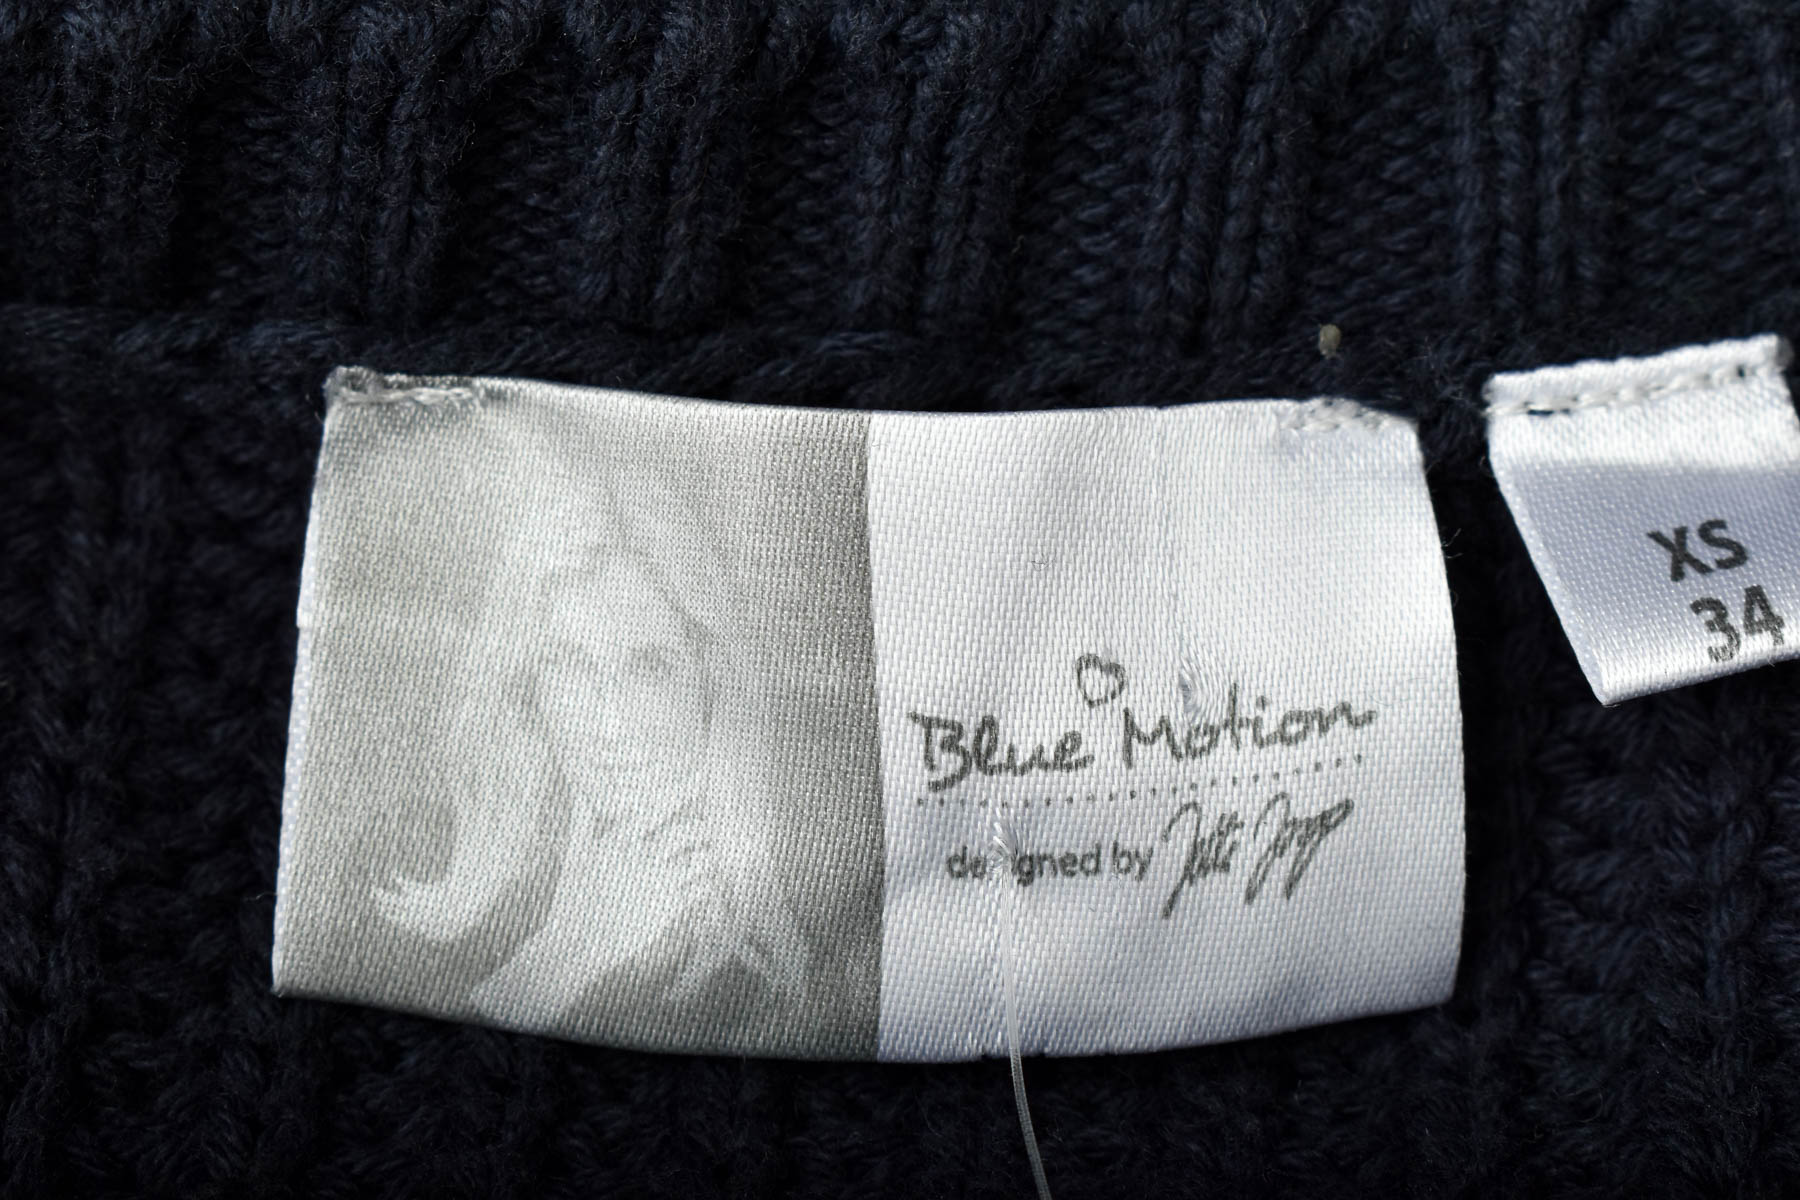 Γυναικείο πουλόβερ - Blue Motion - 2